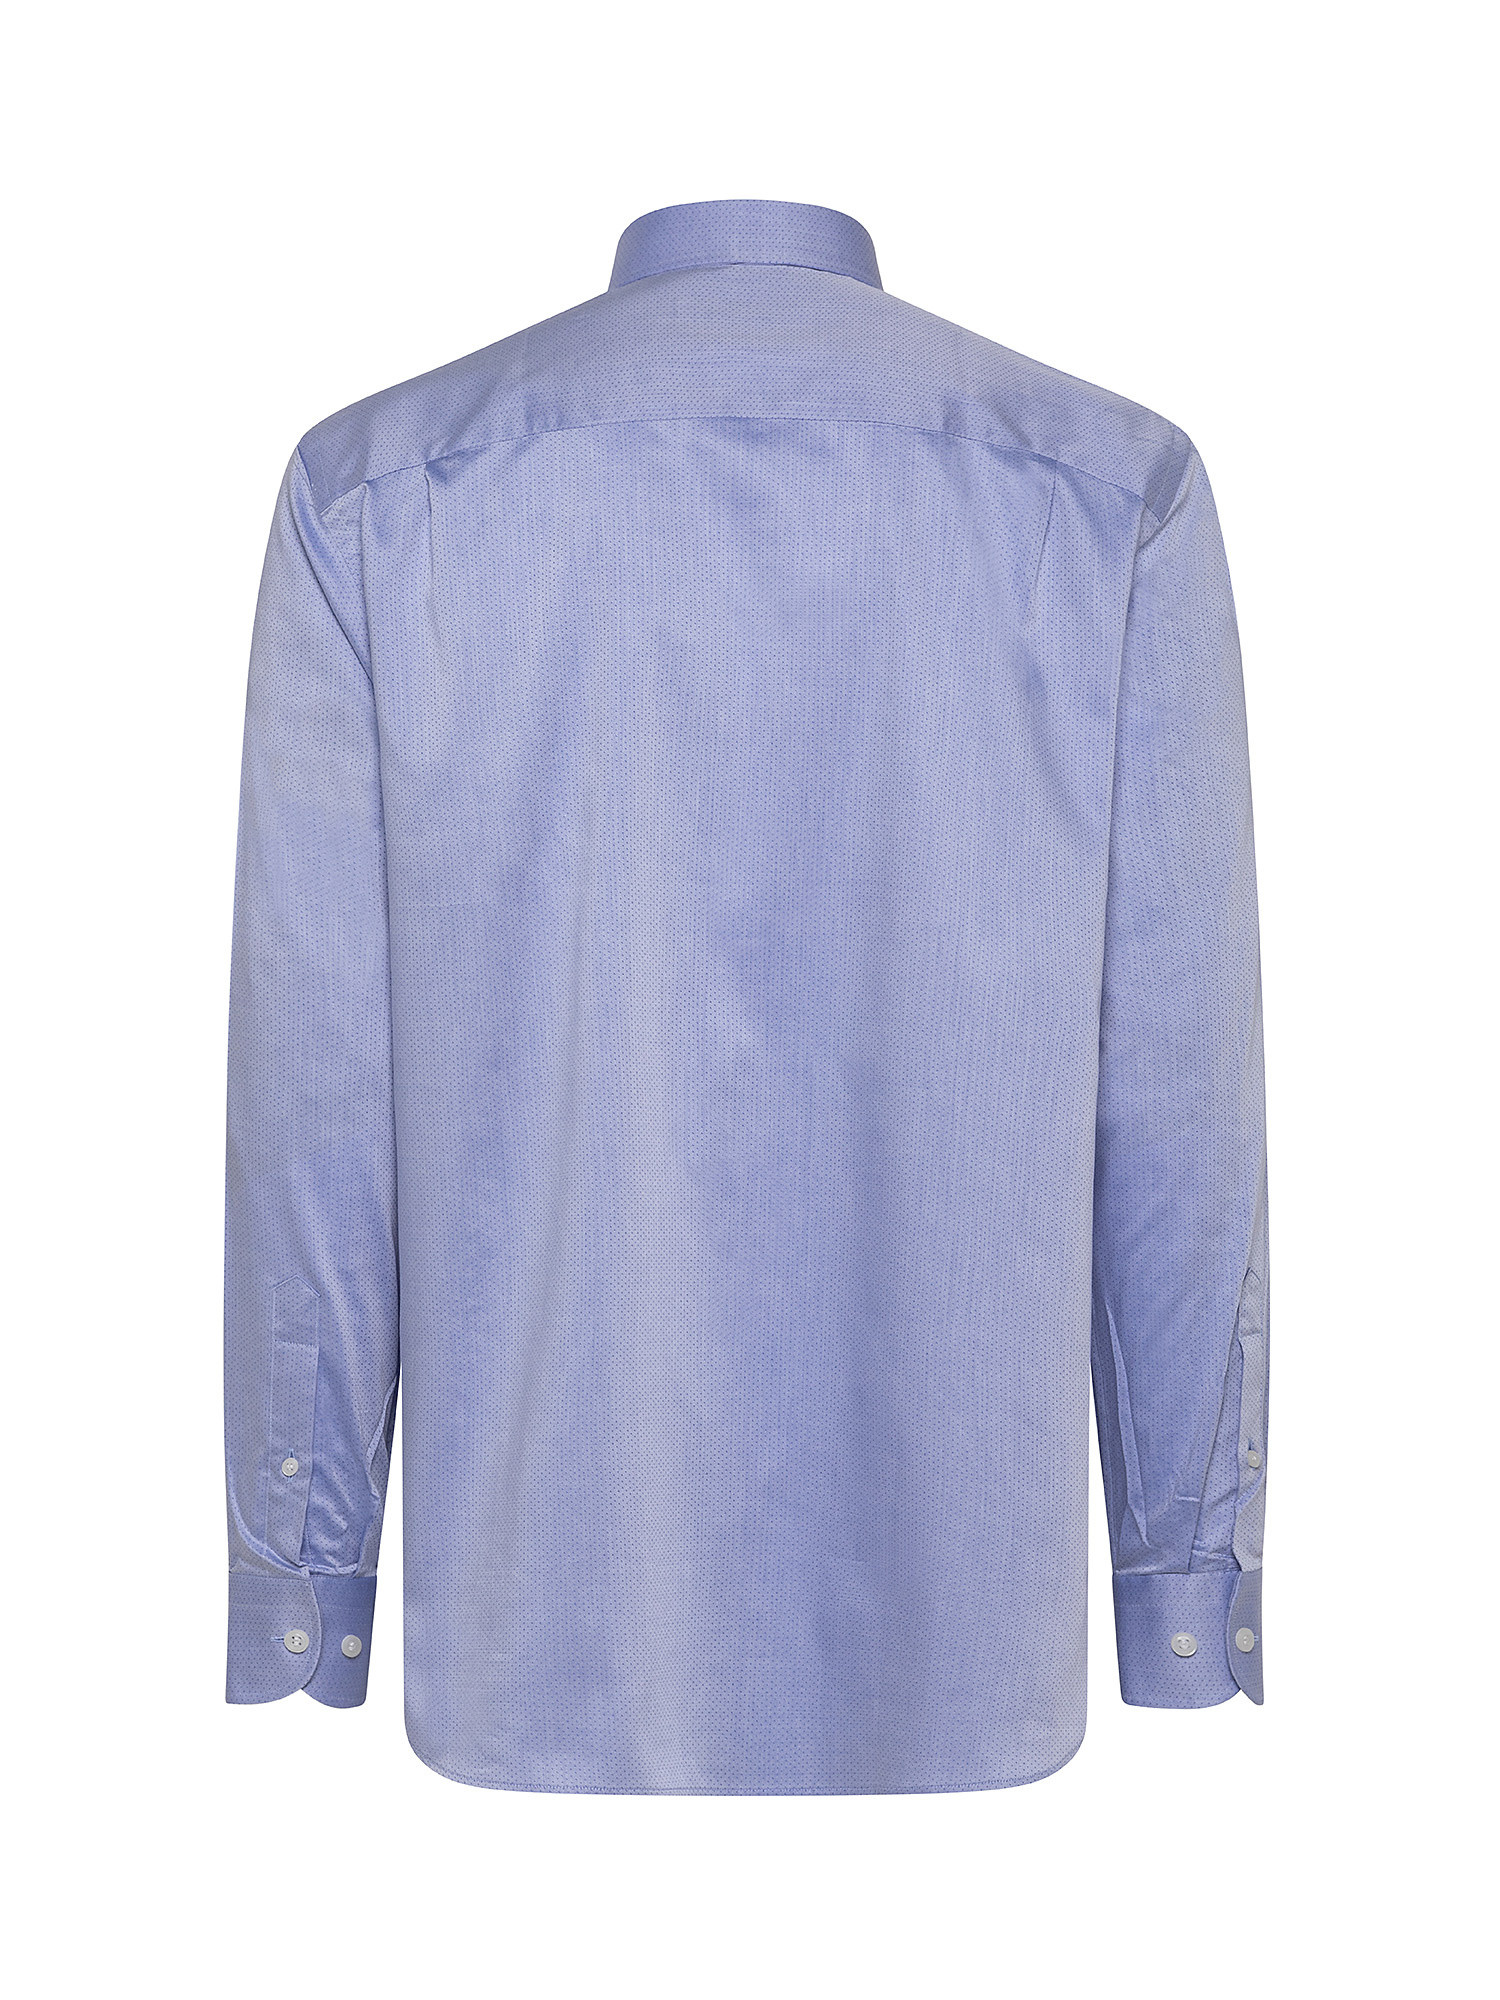 Camicia regular fit twill di cotone, Azzurro, large